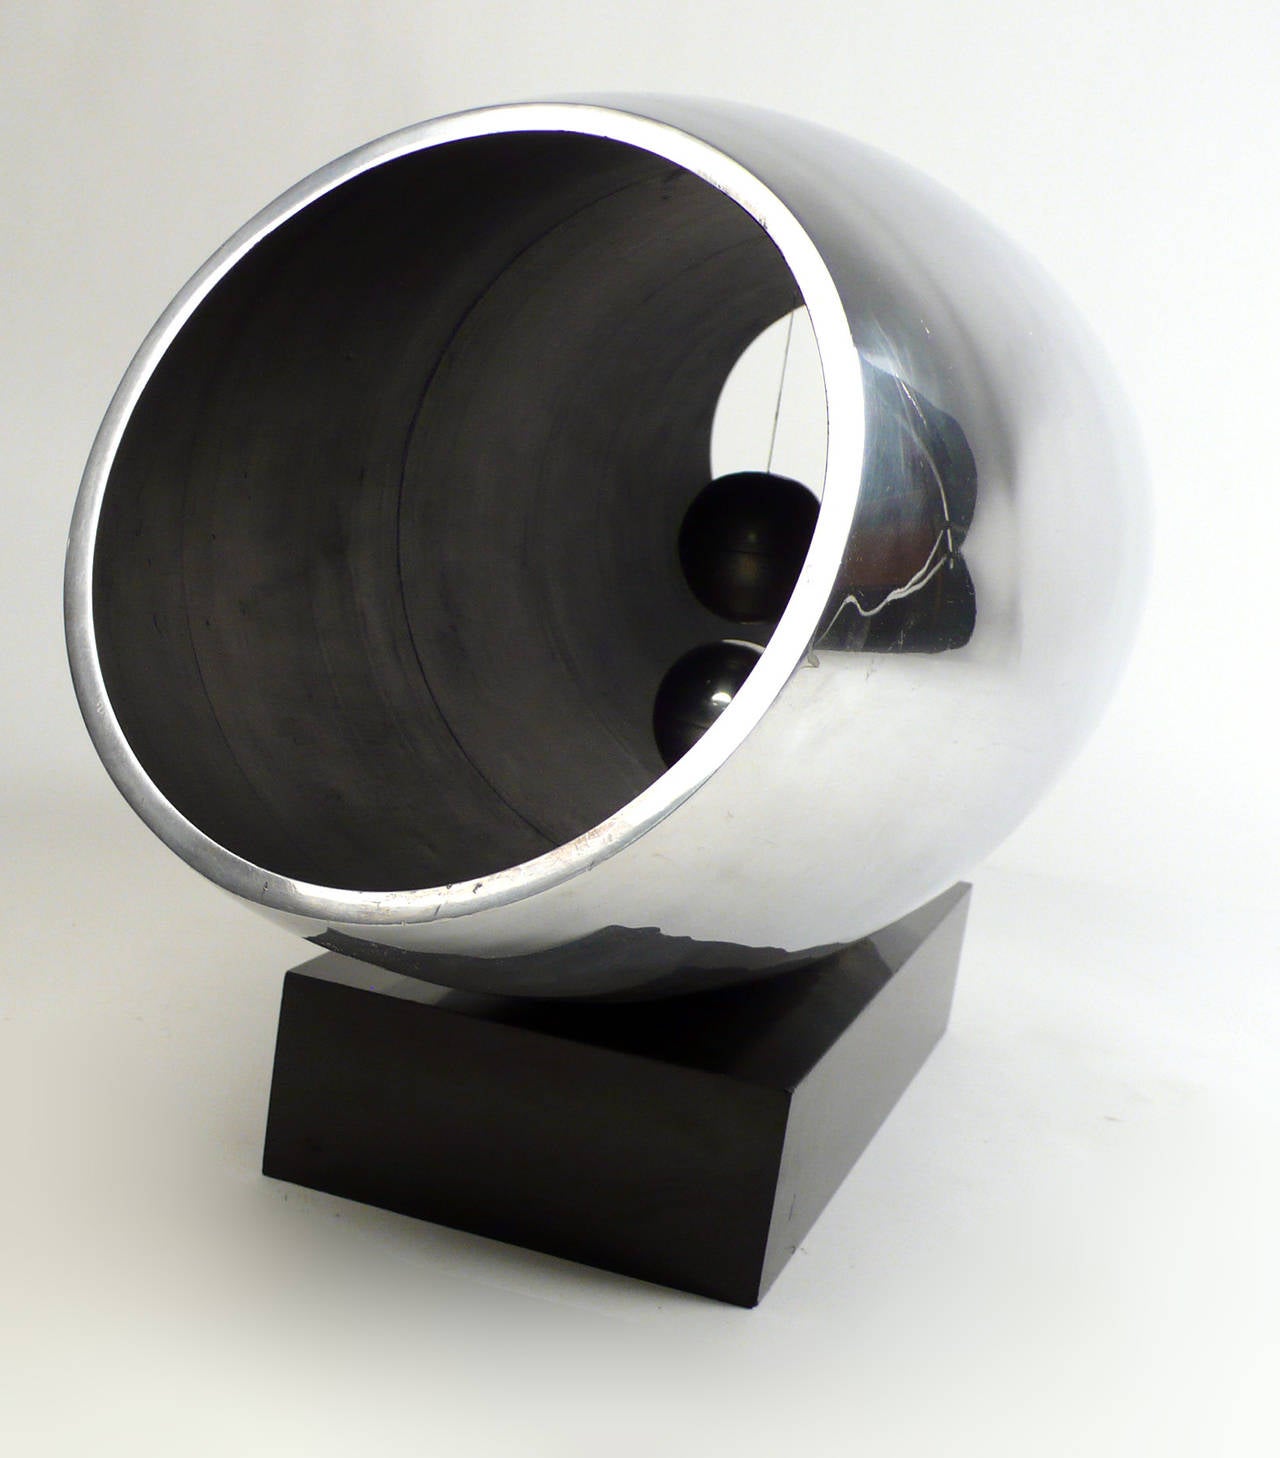 Aluminum William Alberto Collie 'Spatial Absolutes' Anti-Gravitational Sculpture